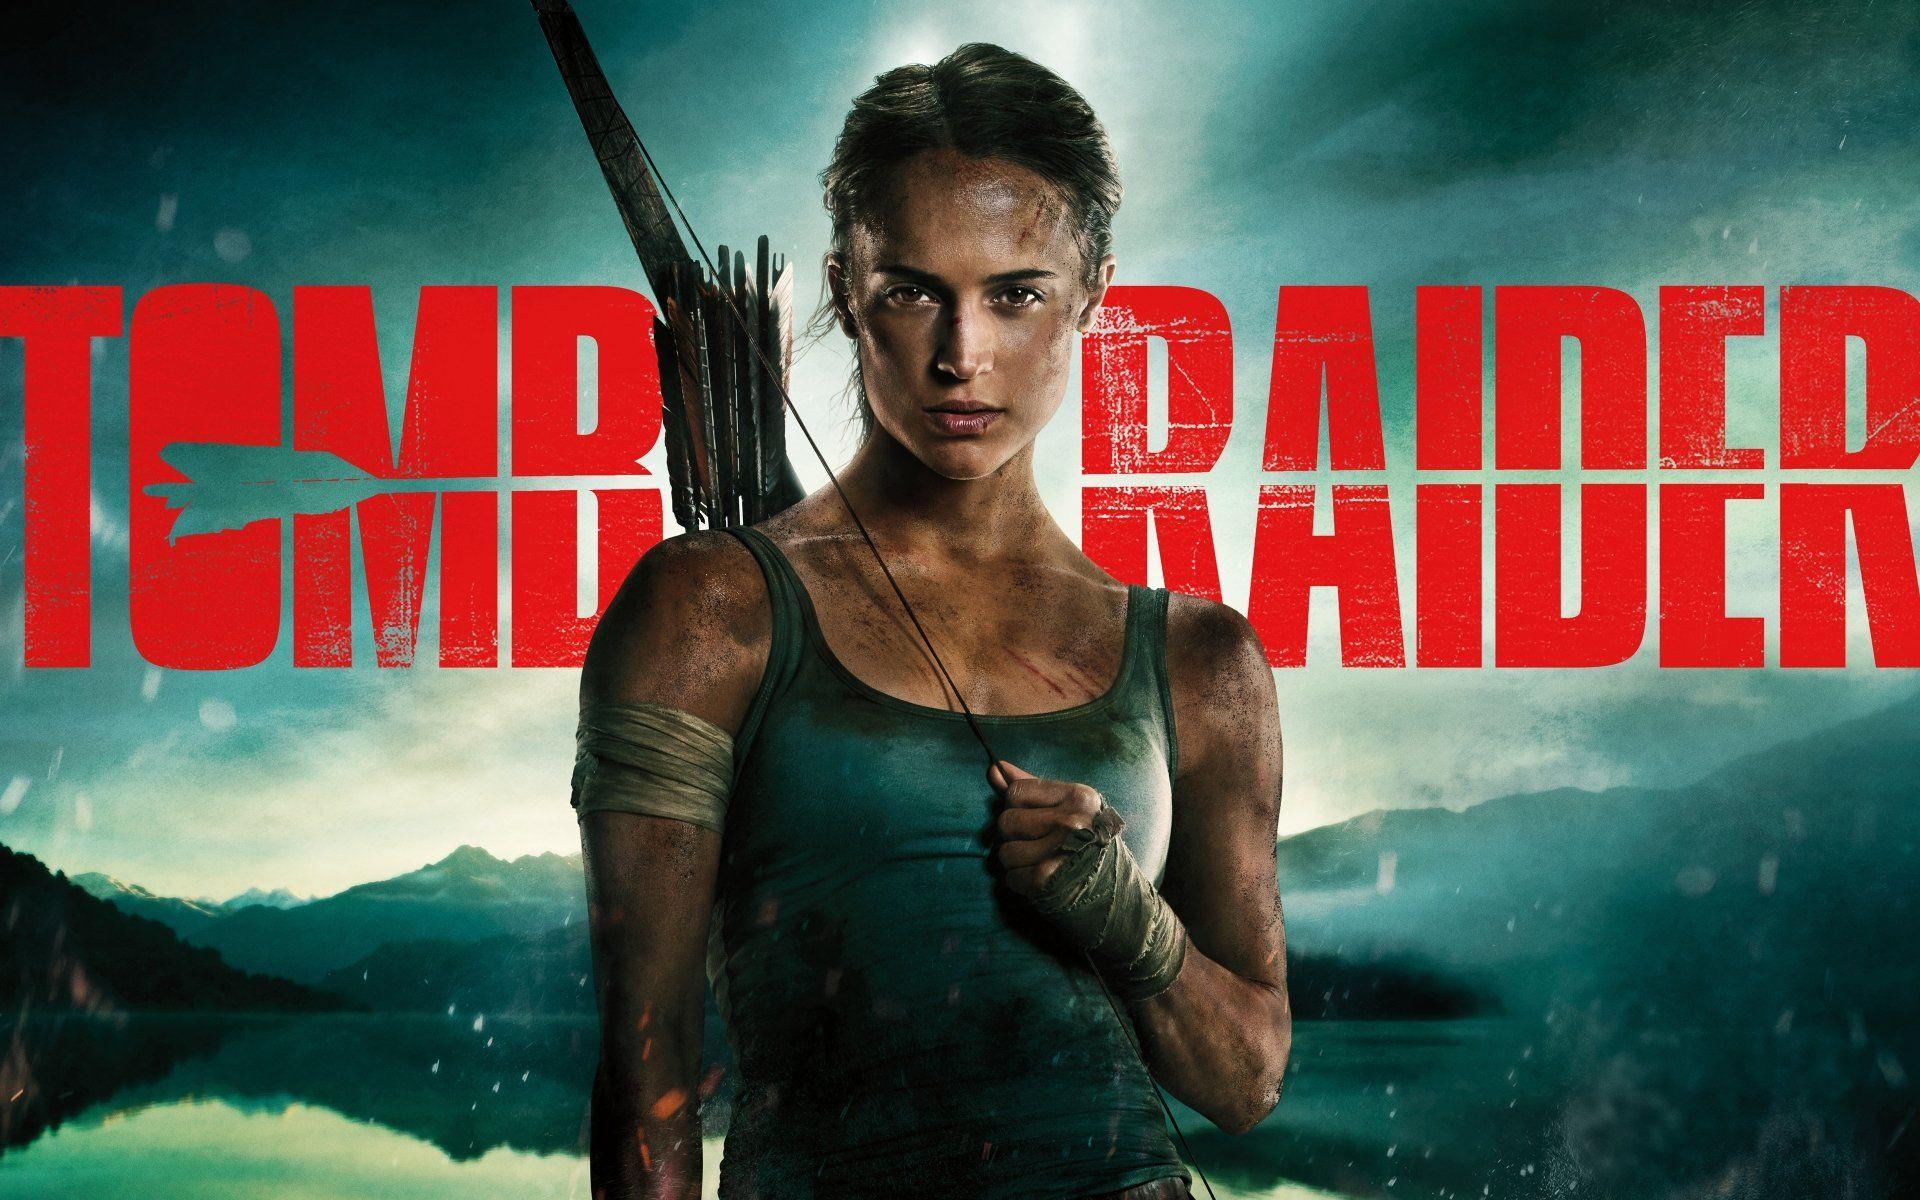 Raider 2018 Movie Poster Background